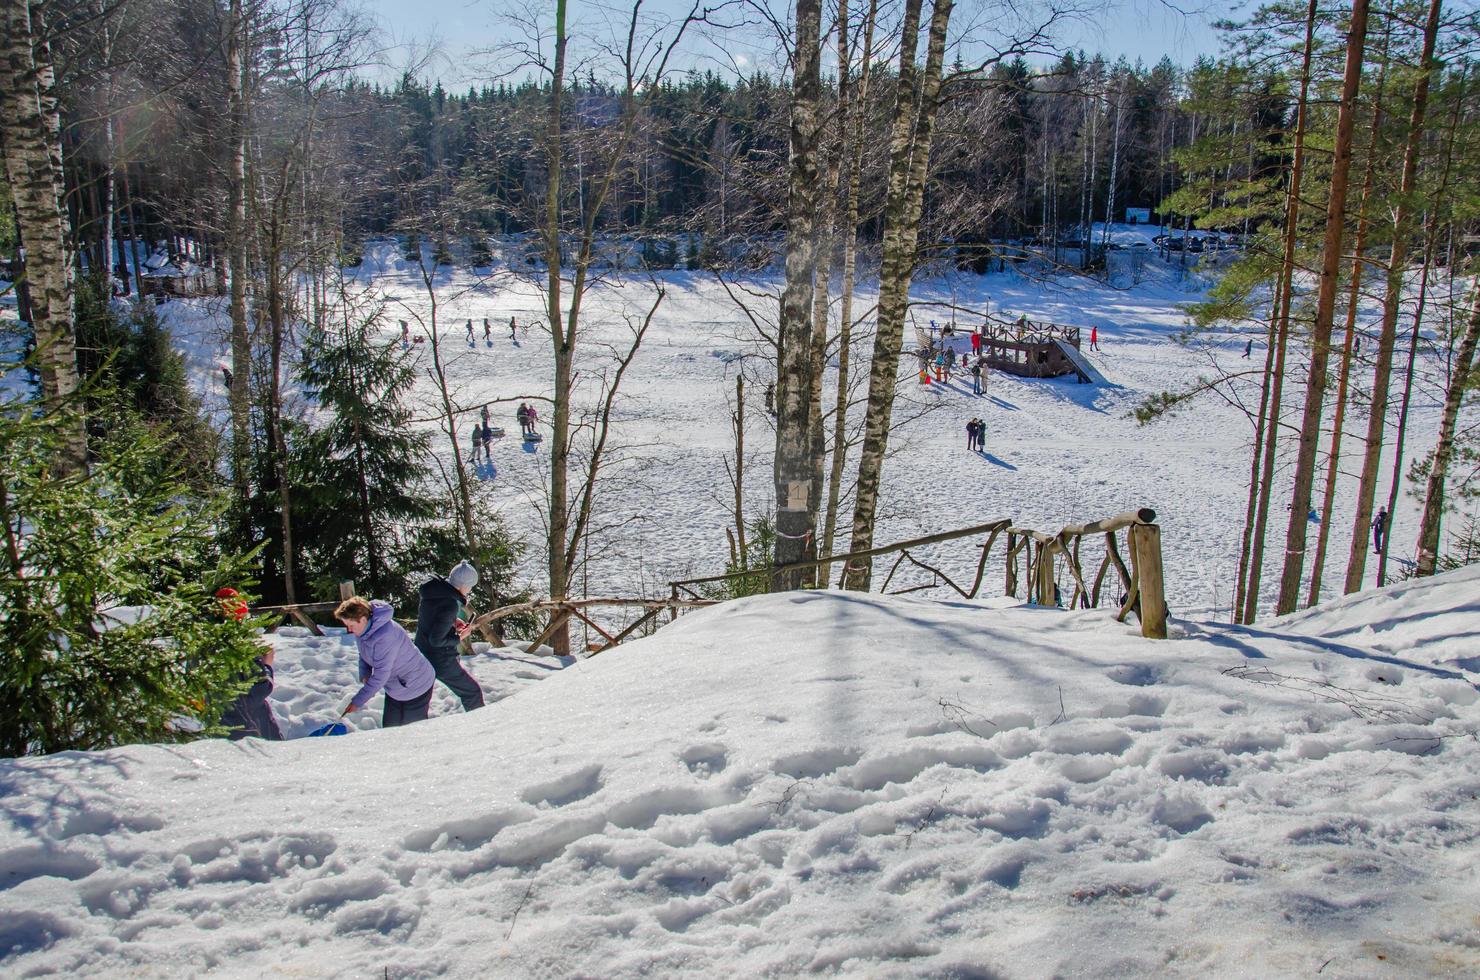 parque de invierno con toboganes de nieve, paseos por el parque foto